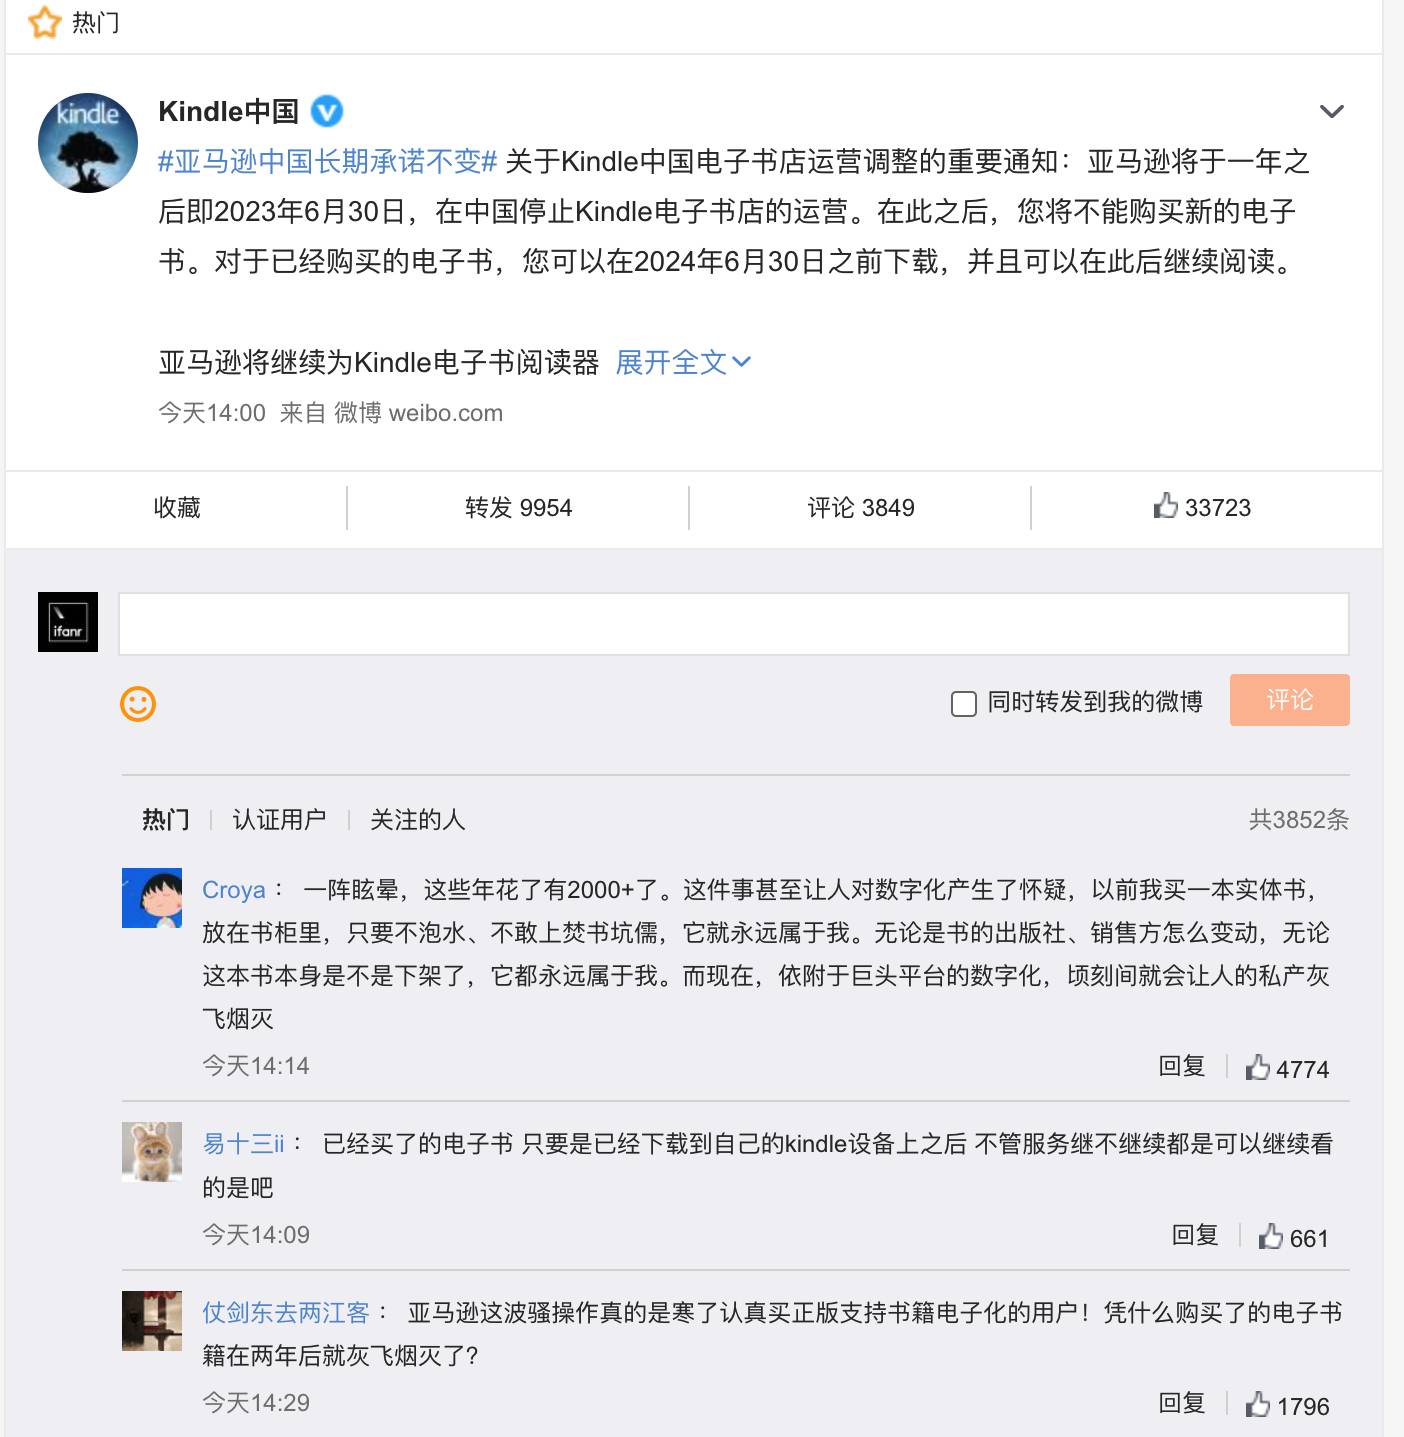 1221654161076 - impreparato! Kindle ha annunciato di smettere di operare in Cina, l ‘”ascensore” del progresso è caduto improvvisamente